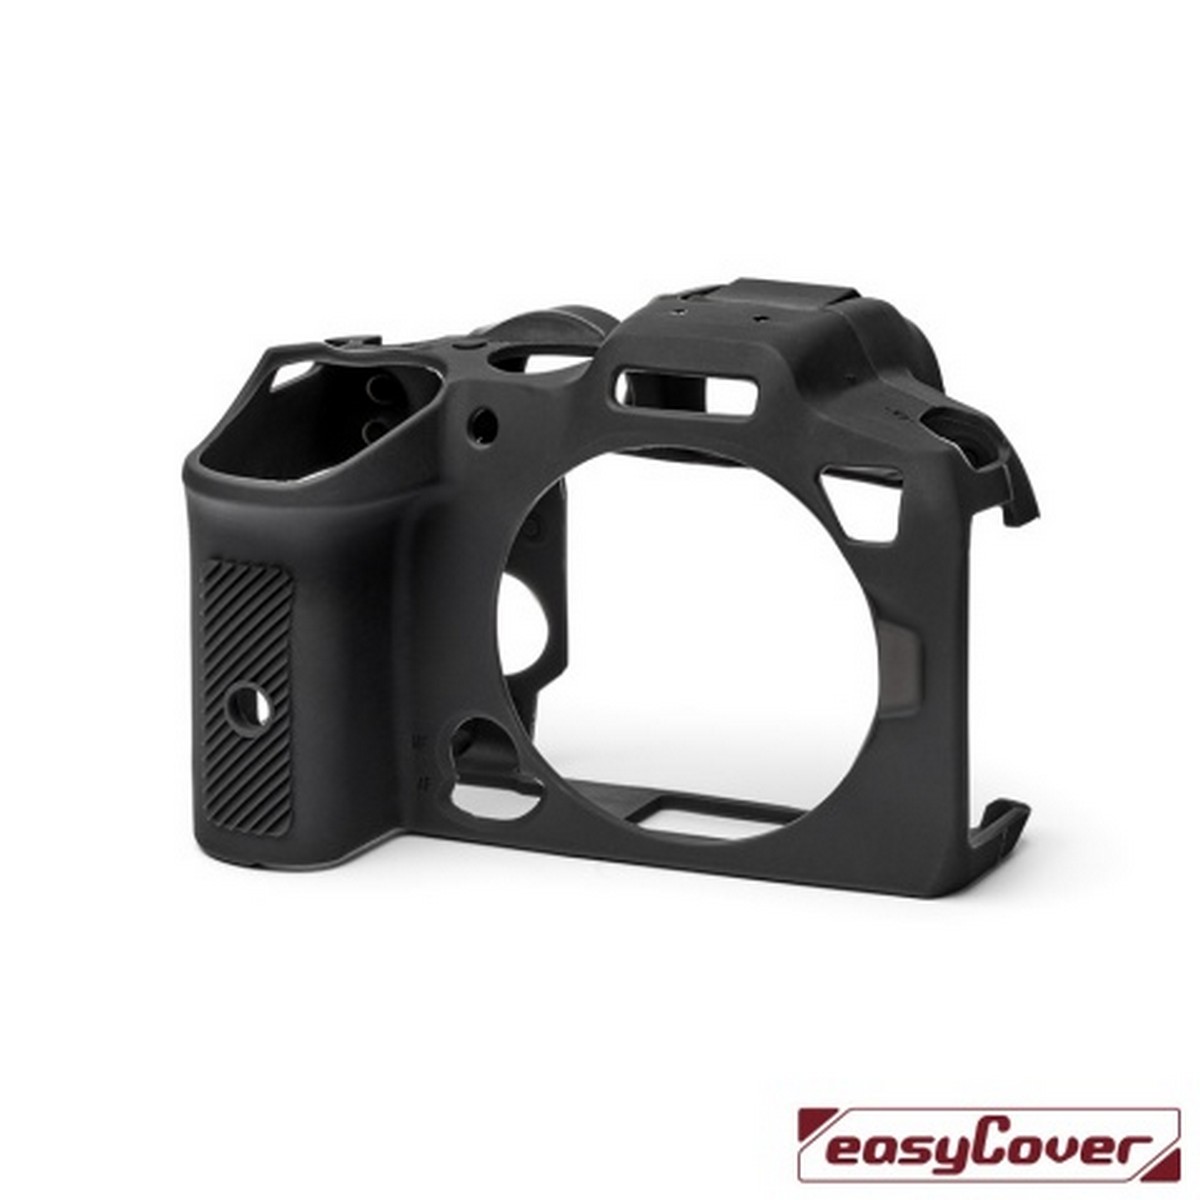 Easycover Silikon-Schutzhülle für Canon EOS EOS R7 Schwarz